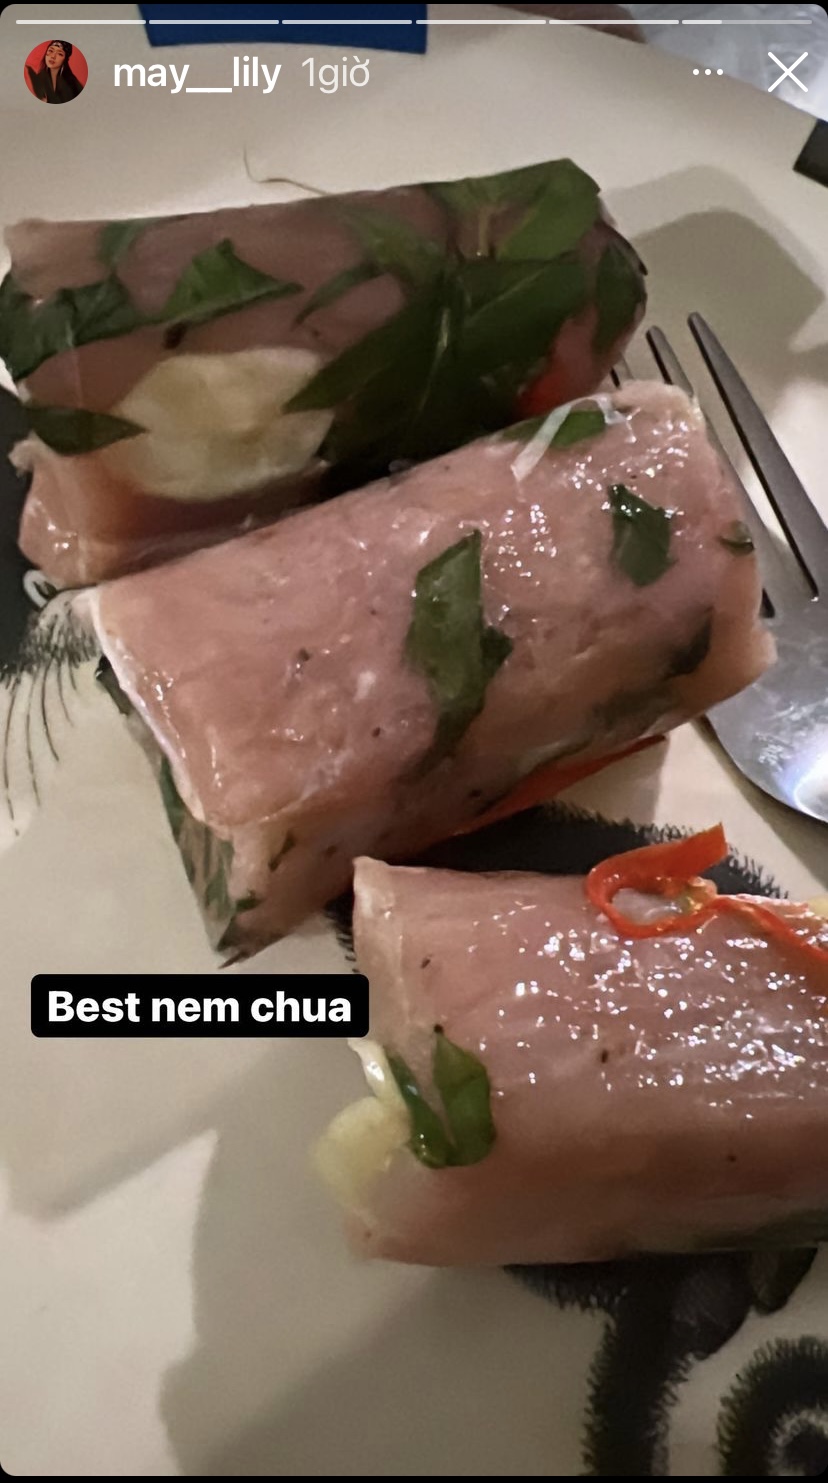 Nem chua là một trong những món đặc sản của Thanh Hoá được nhiều người yêu thích. Là một ca sĩ gốc Thanh Hoá, Phương Ly hôm nay đã chia sẻ với người hâm một những chiếc nem chua 'chất lượng' quê mình.